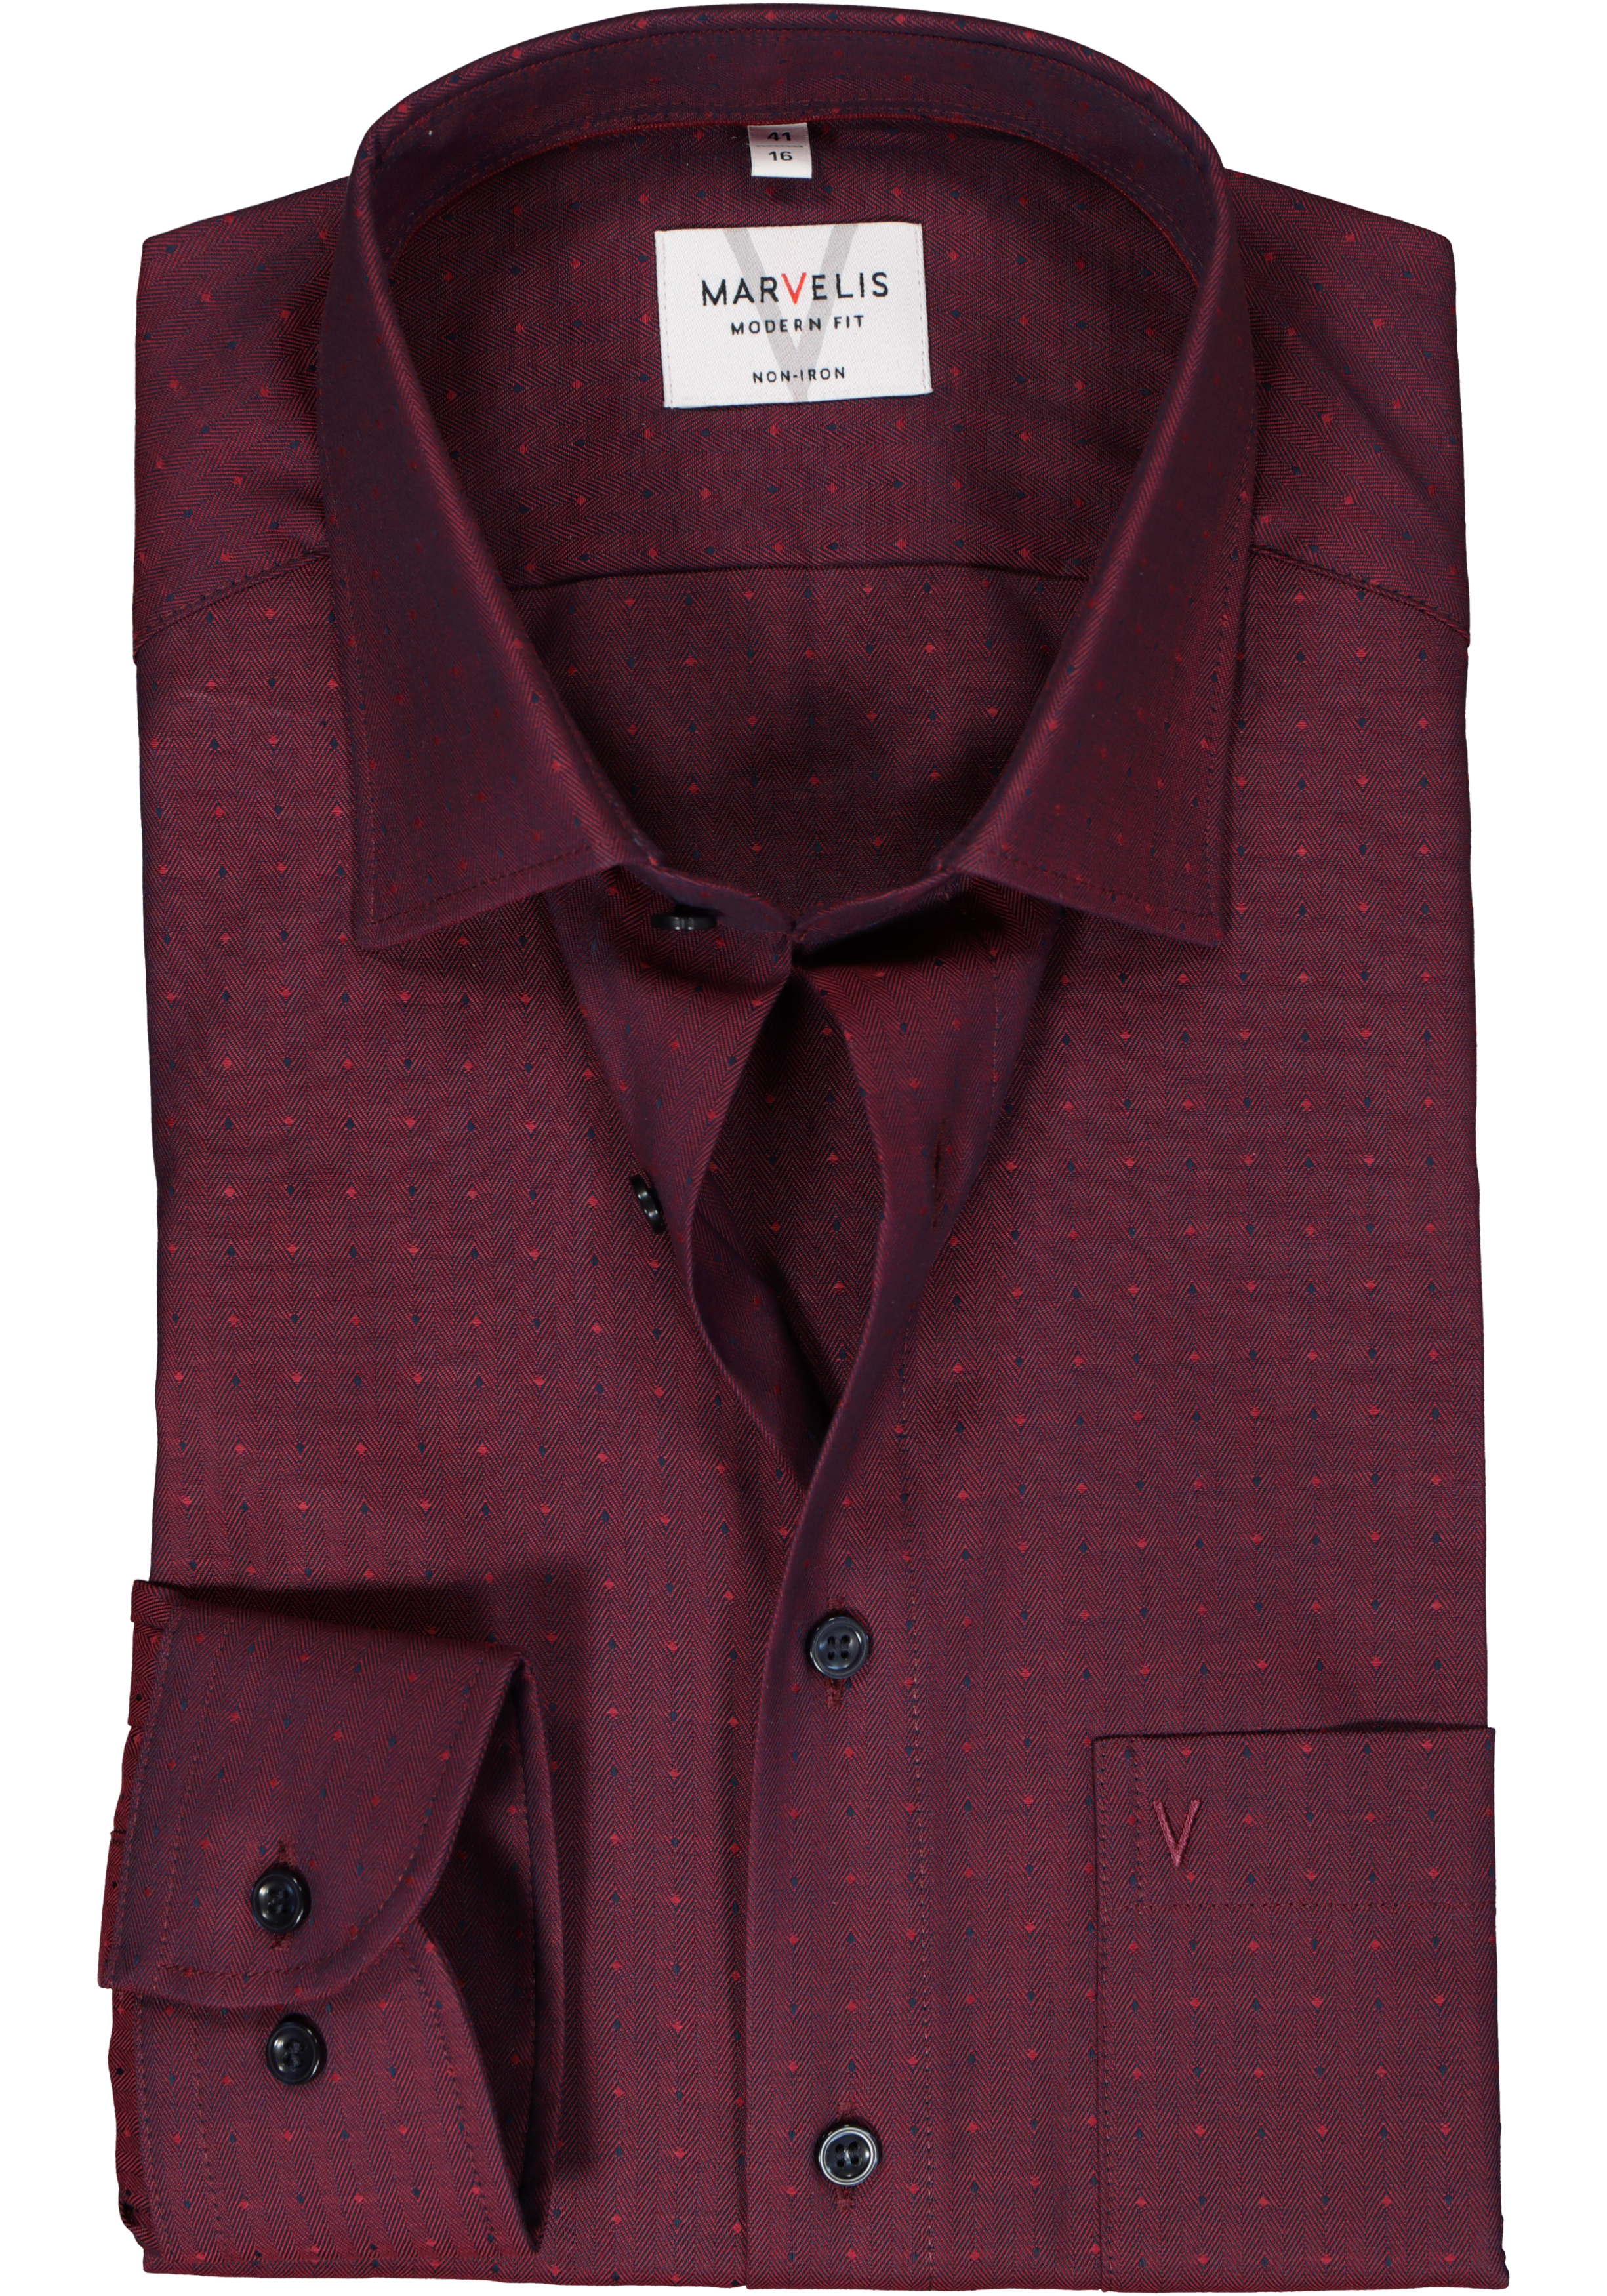 MARVELIS modern fit overhemd, herringbone, rood